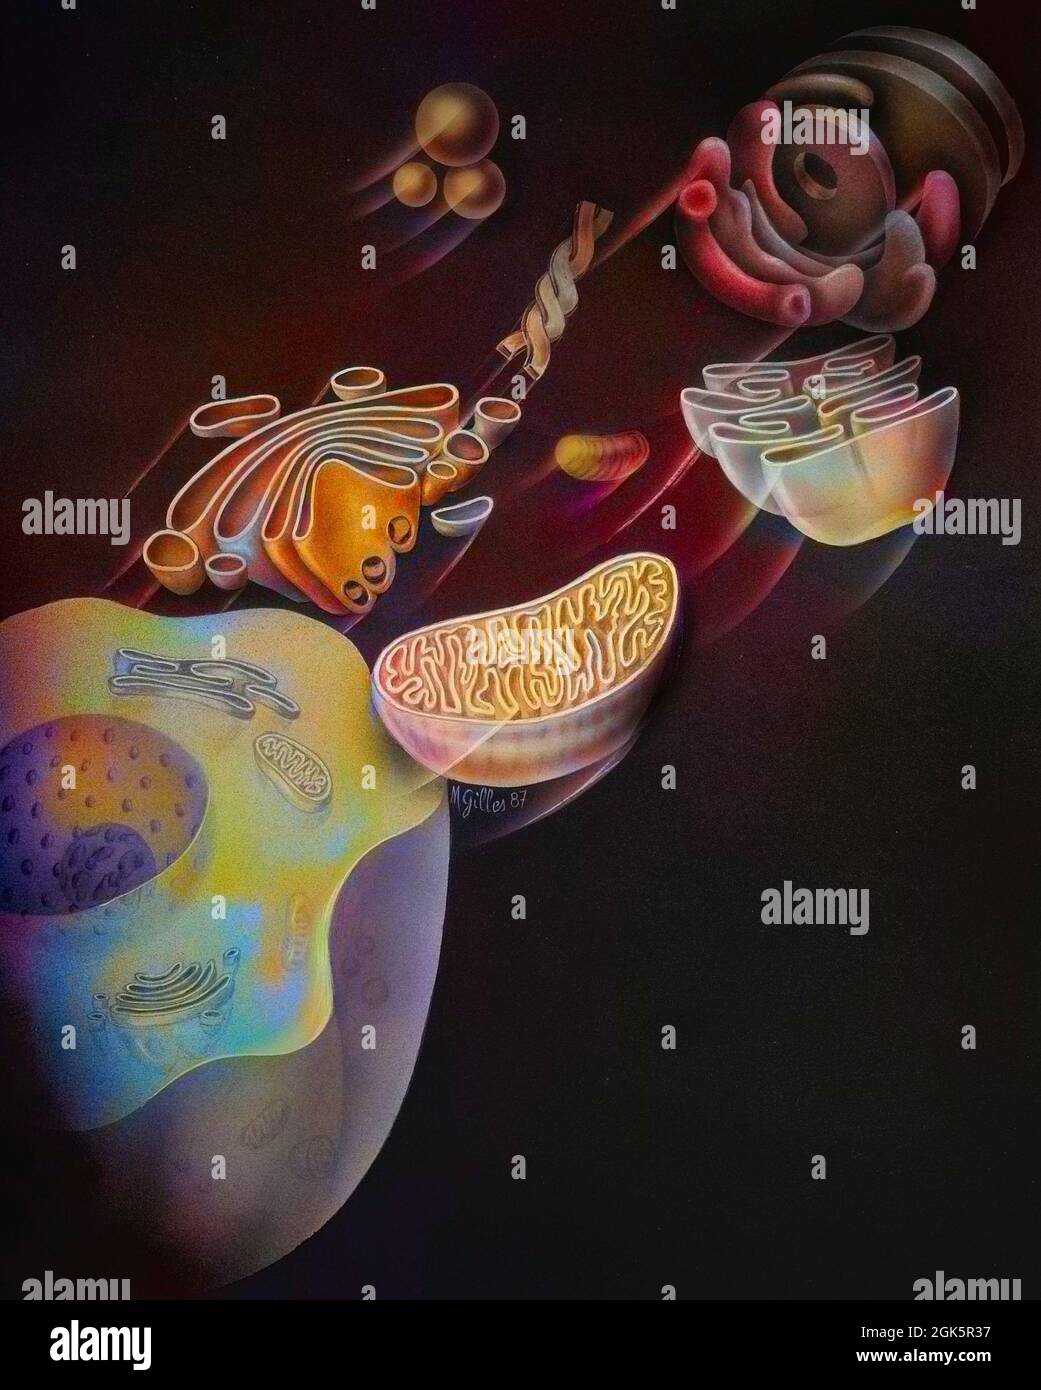 Zelle mit dem Golgi-Apparat, den Mitochondrien und dem endoplasmatischen Retikulum sowie Lysosomen. Stockfoto